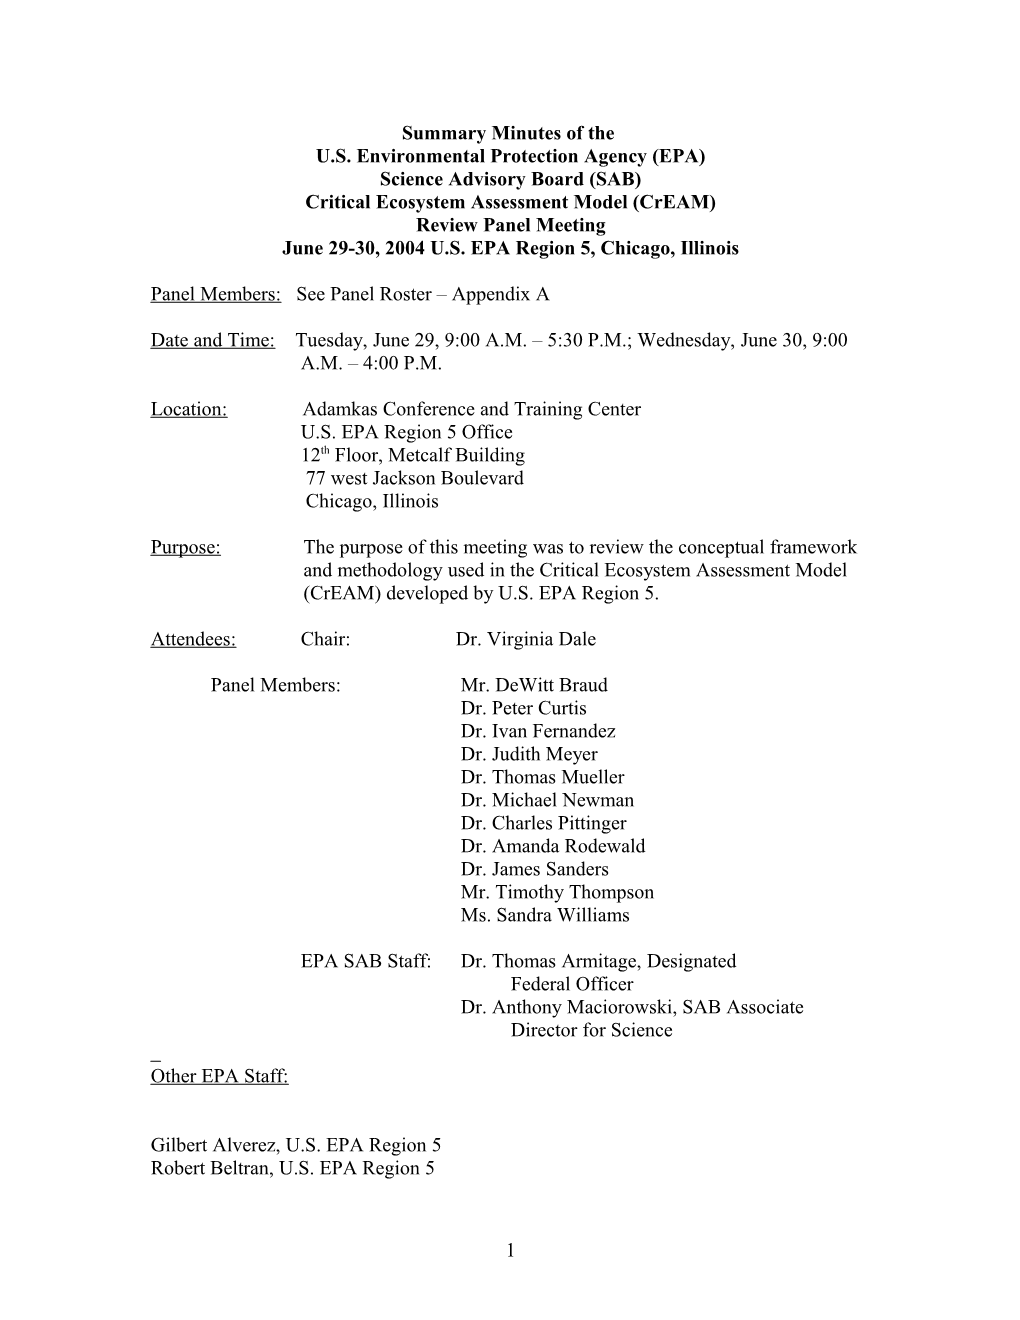 Summary Minutes of the Science Advisory Board Advisory Panel on EPA S